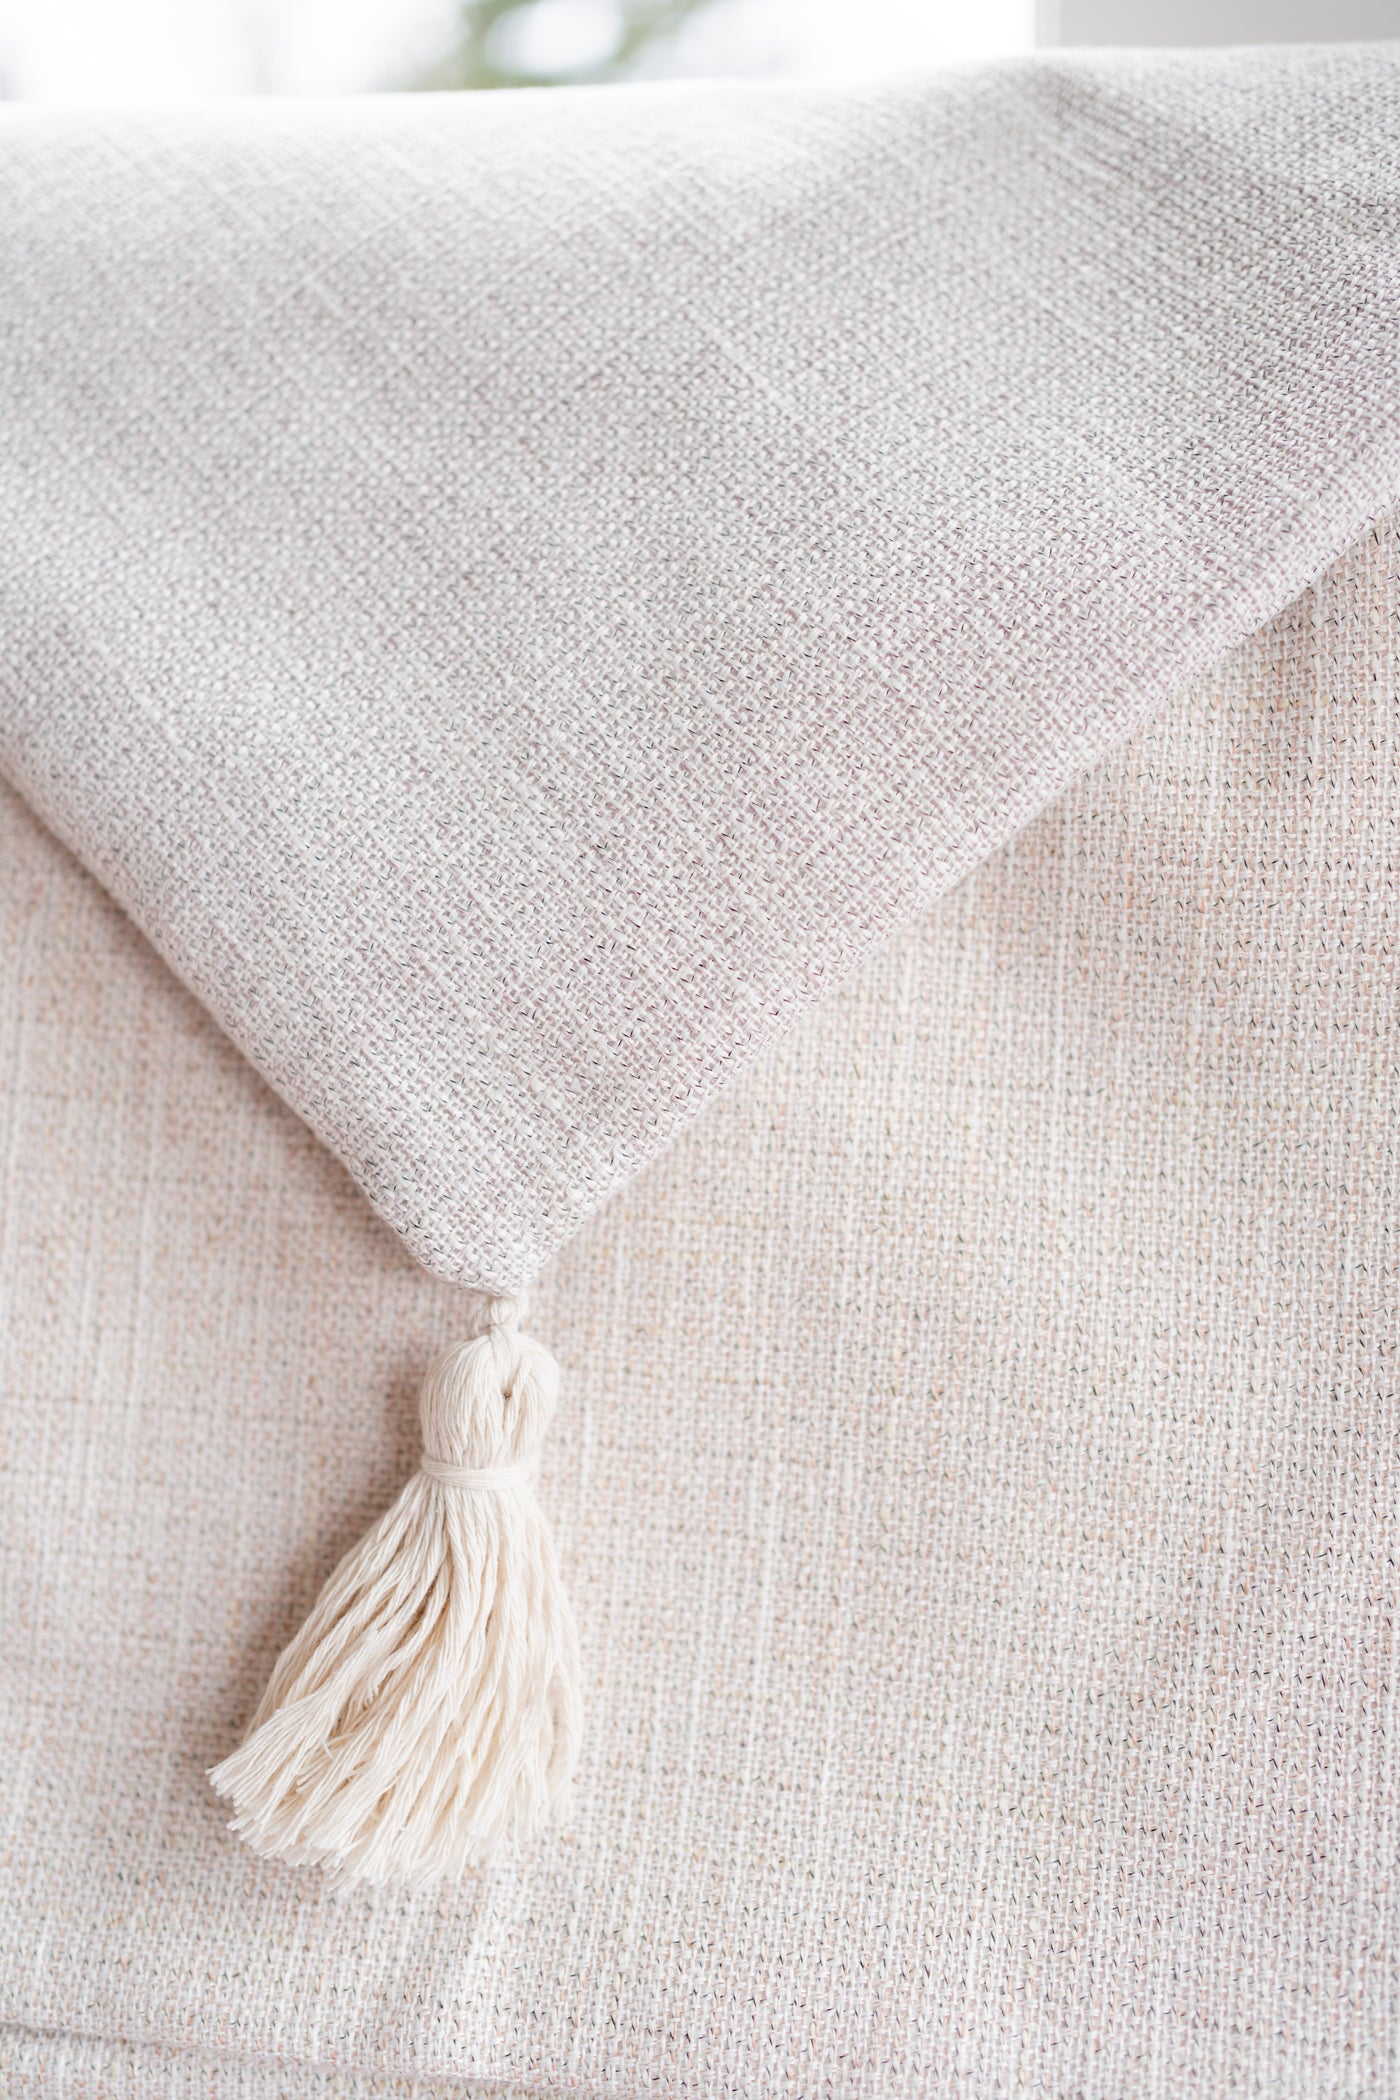 Linen Cotton Blend Tassel Pillow Cover